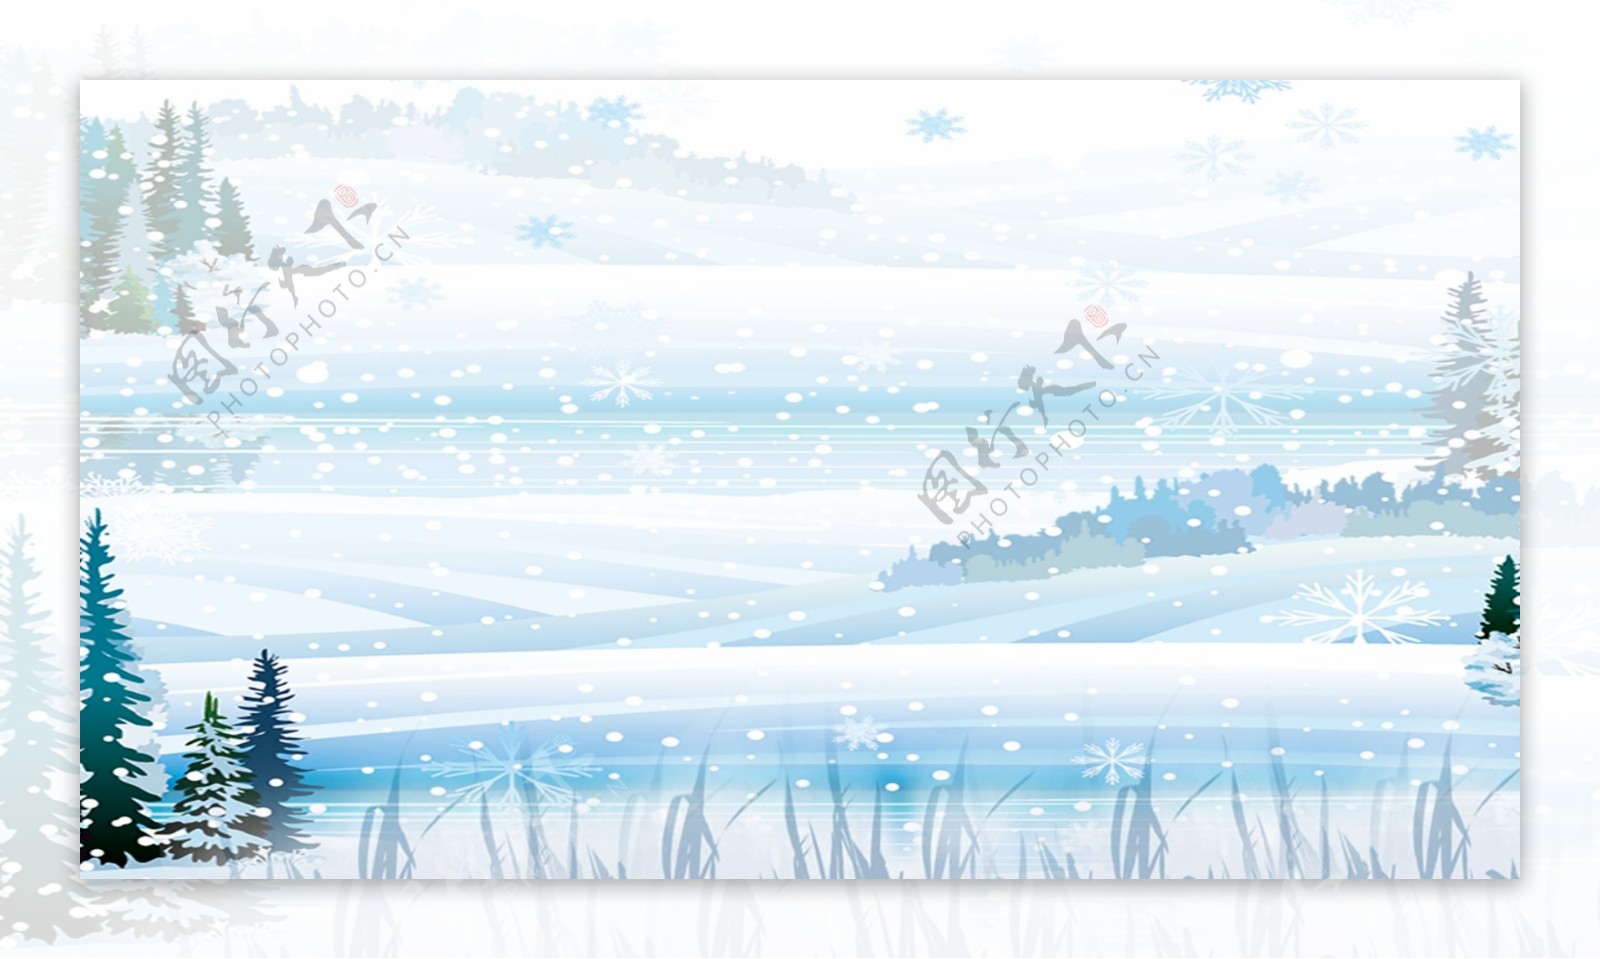 蓝色冬季雪景背景设计